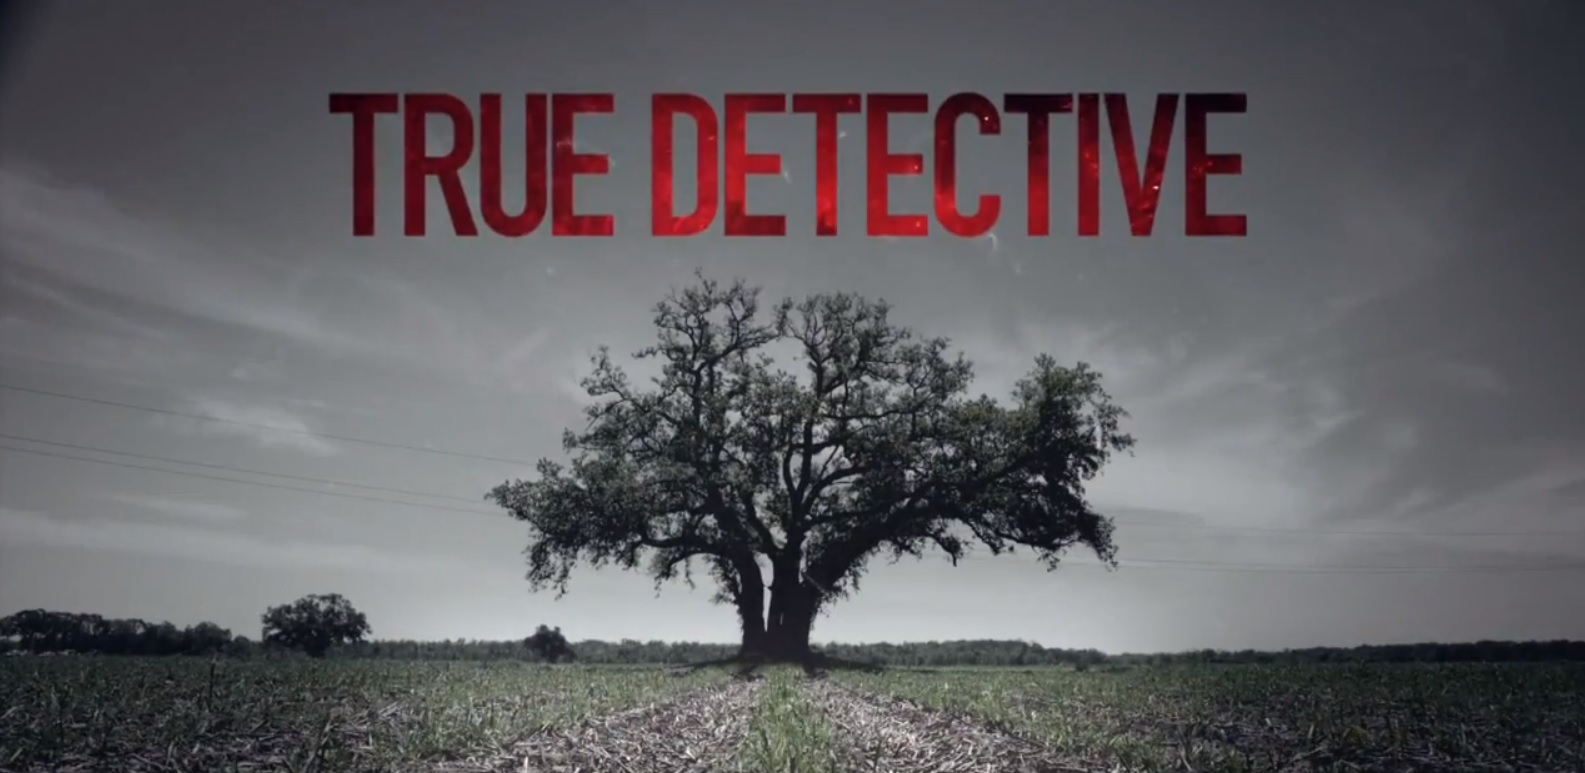 True Detective HD wallpapers, Desktop wallpaper - most viewed